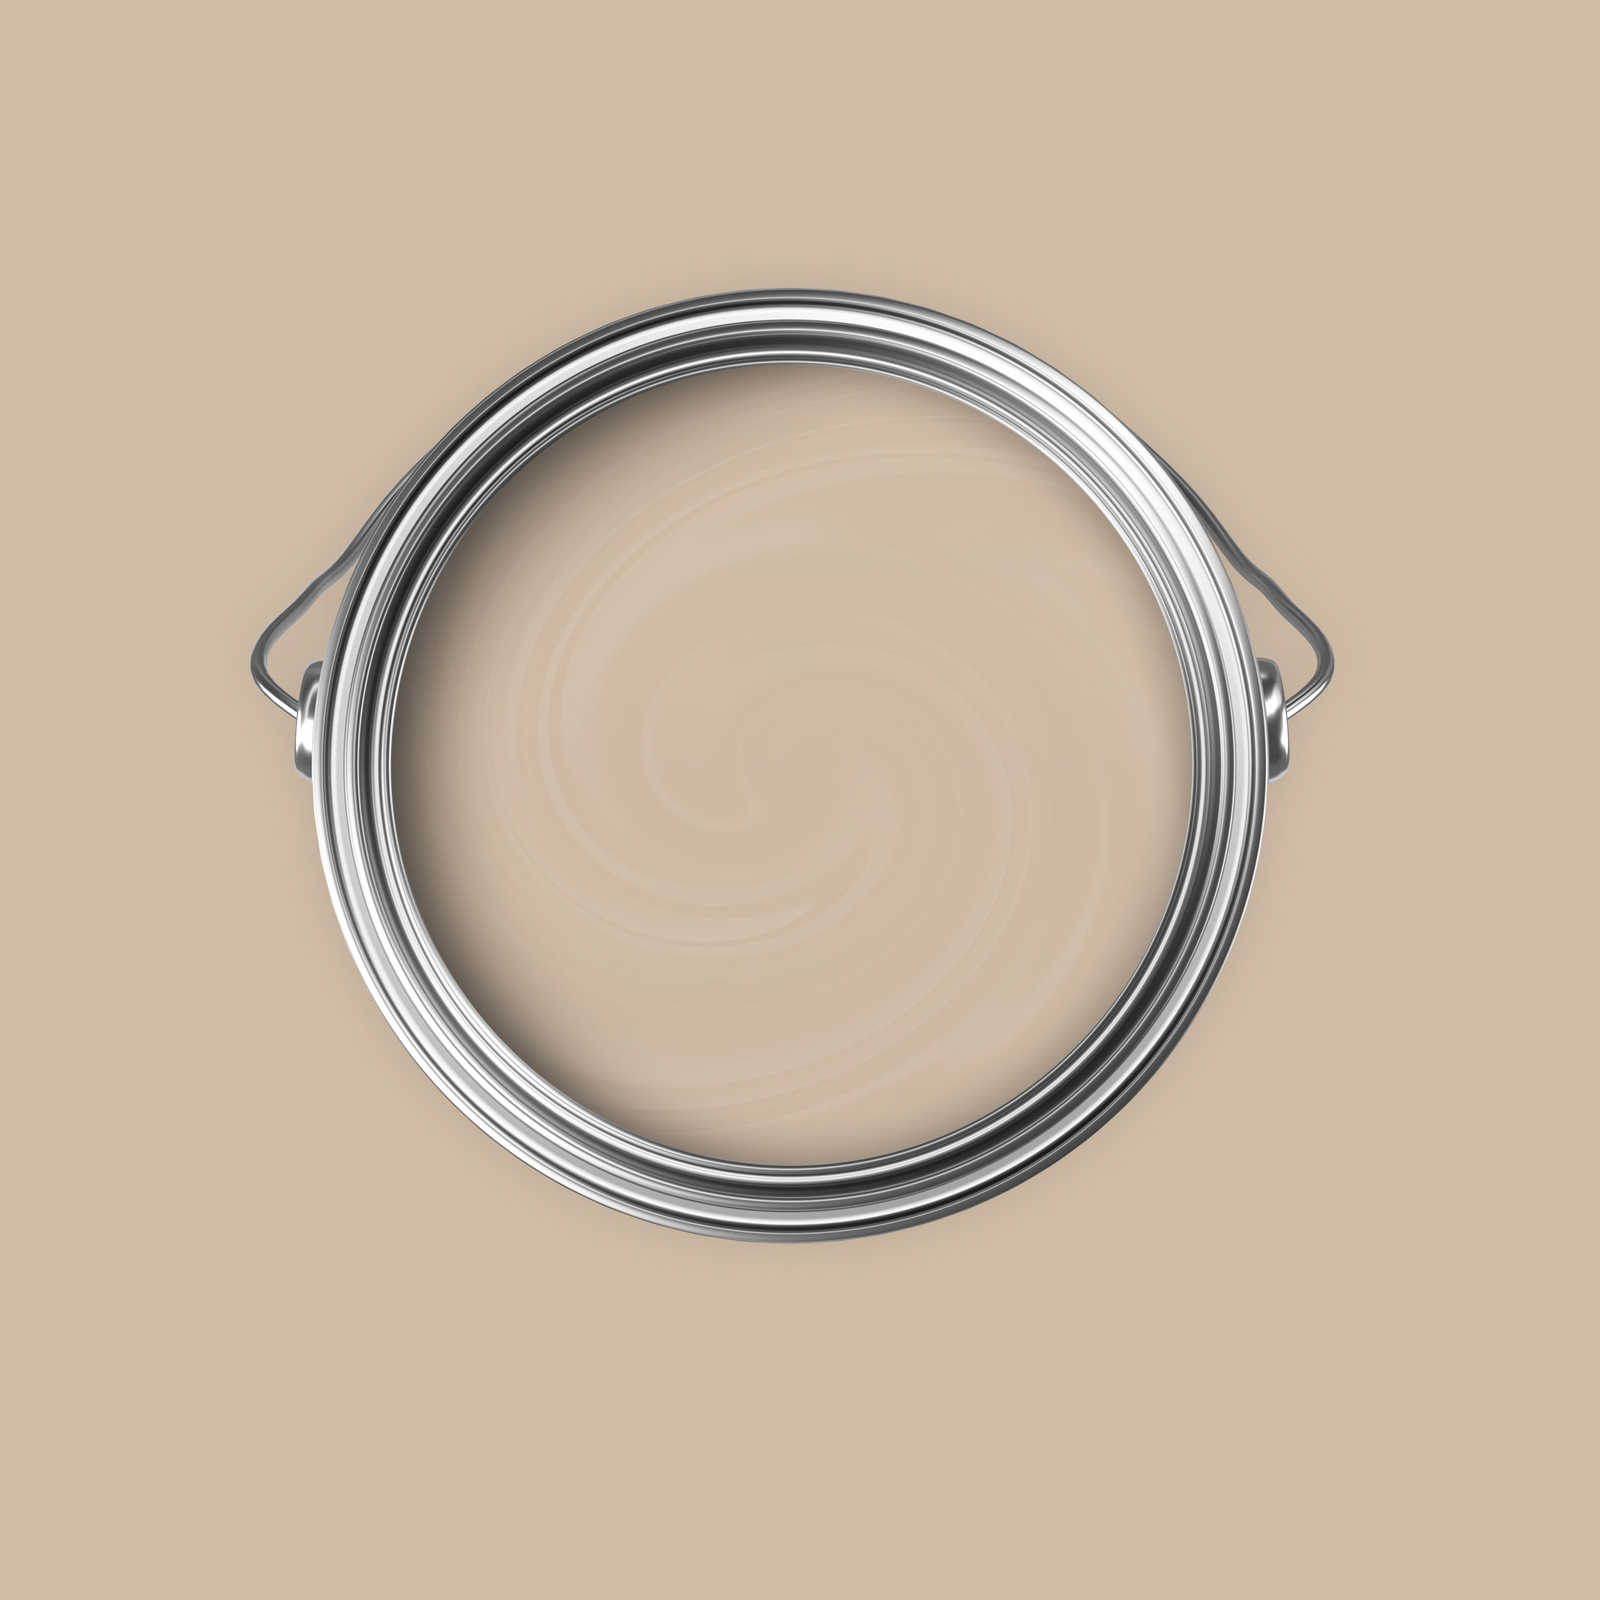             Premium Muurverf huiselijk licht beige »Modern Mud« NW716 – 5 liter
        